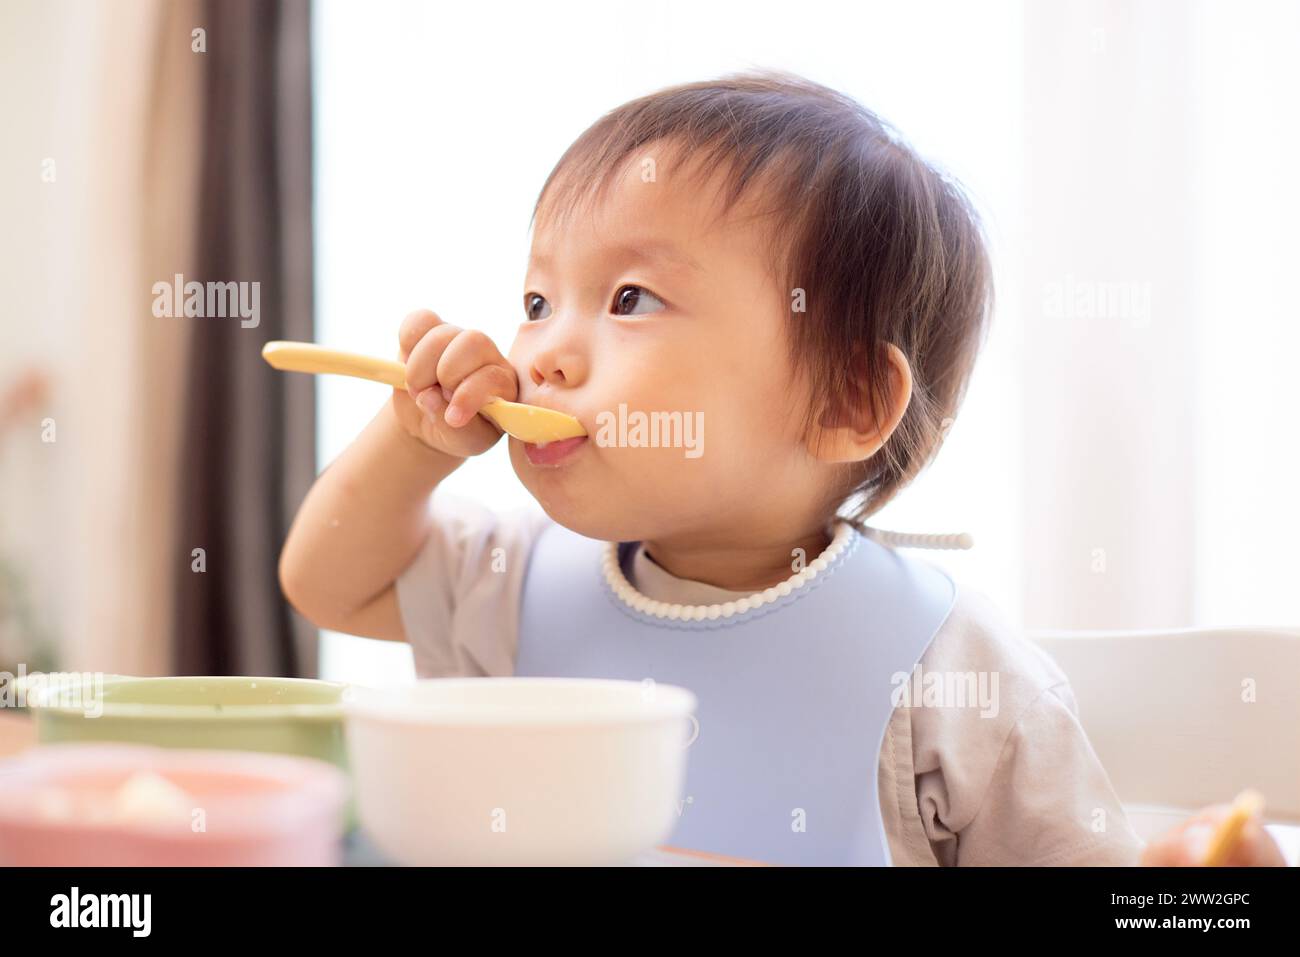 Un bébé mangeant une cuillerée de nourriture Banque D'Images